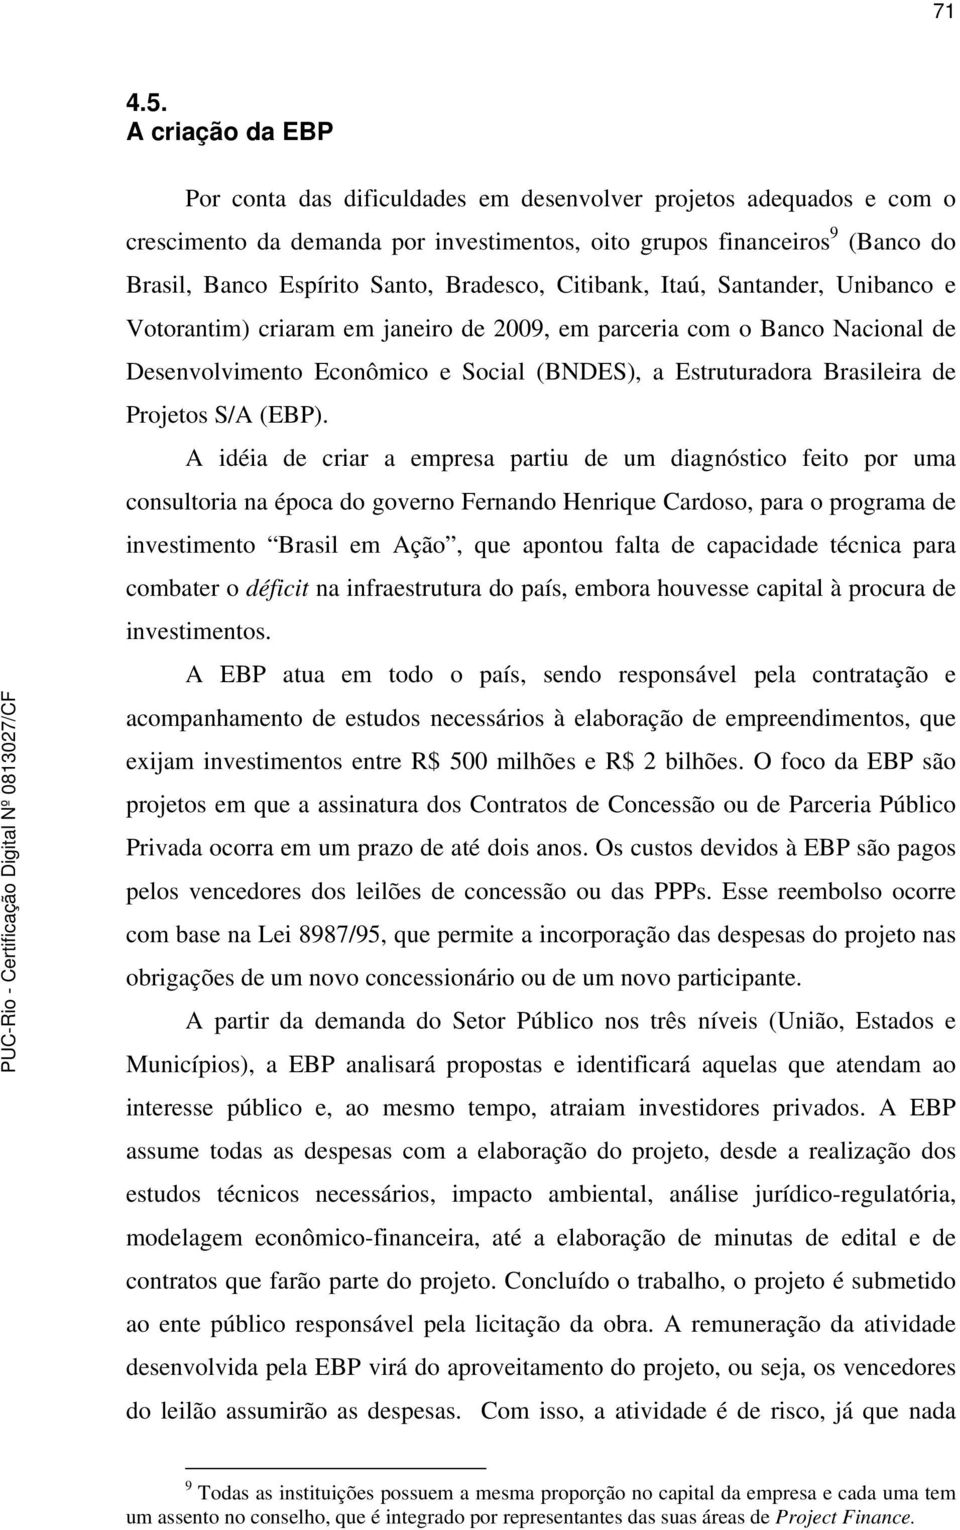 Bradesco, Citibank, Itaú, Santander, Unibanco e Votorantim) criaram em janeiro de 2009, em parceria com o Banco Nacional de Desenvolvimento Econômico e Social (BNDES), a Estruturadora Brasileira de